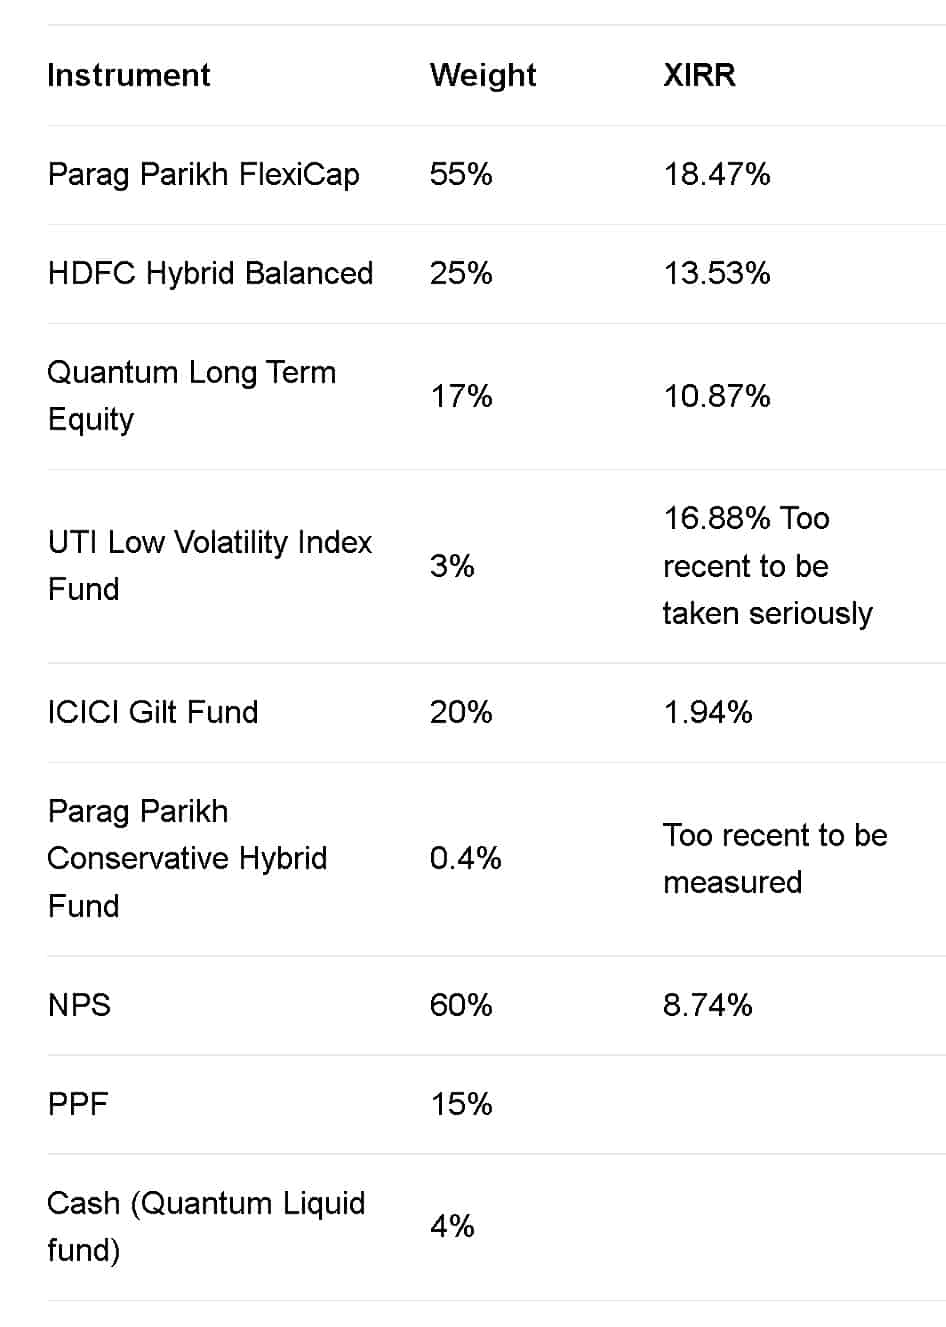 Snapshot of fund and instrument weights in my retirement portfolio